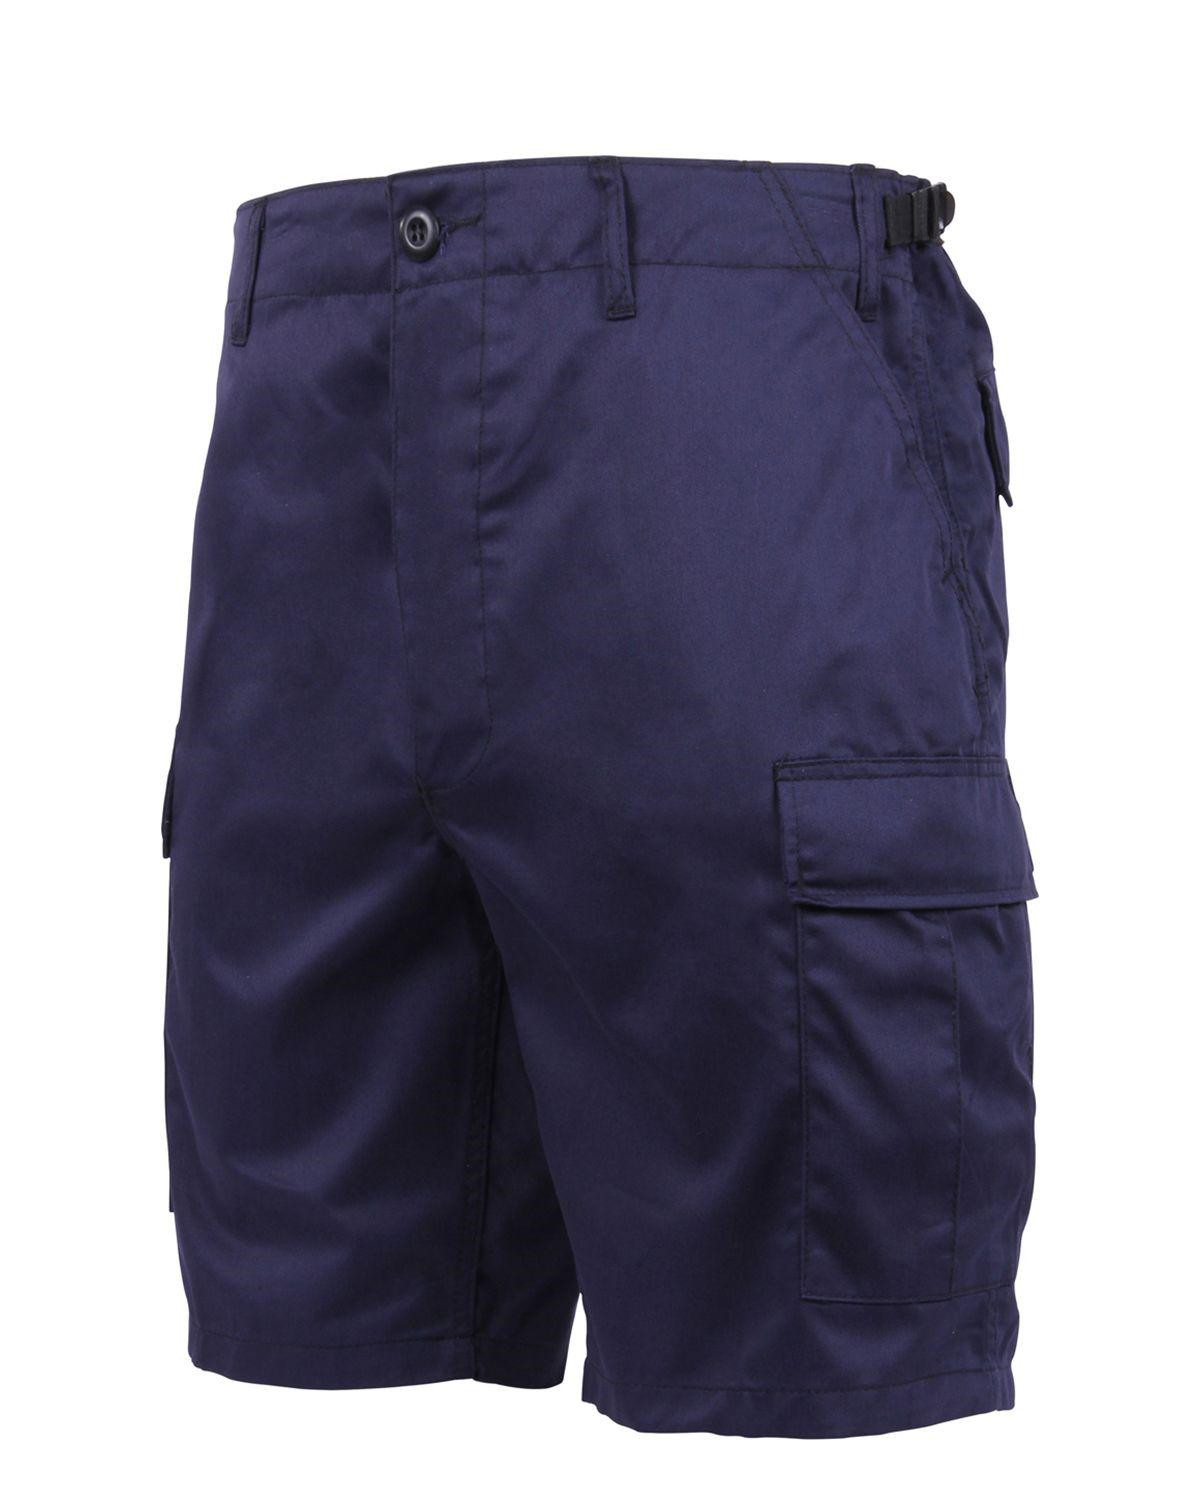 Rothco BDU Shorts (Navy, Large / 35"-39")